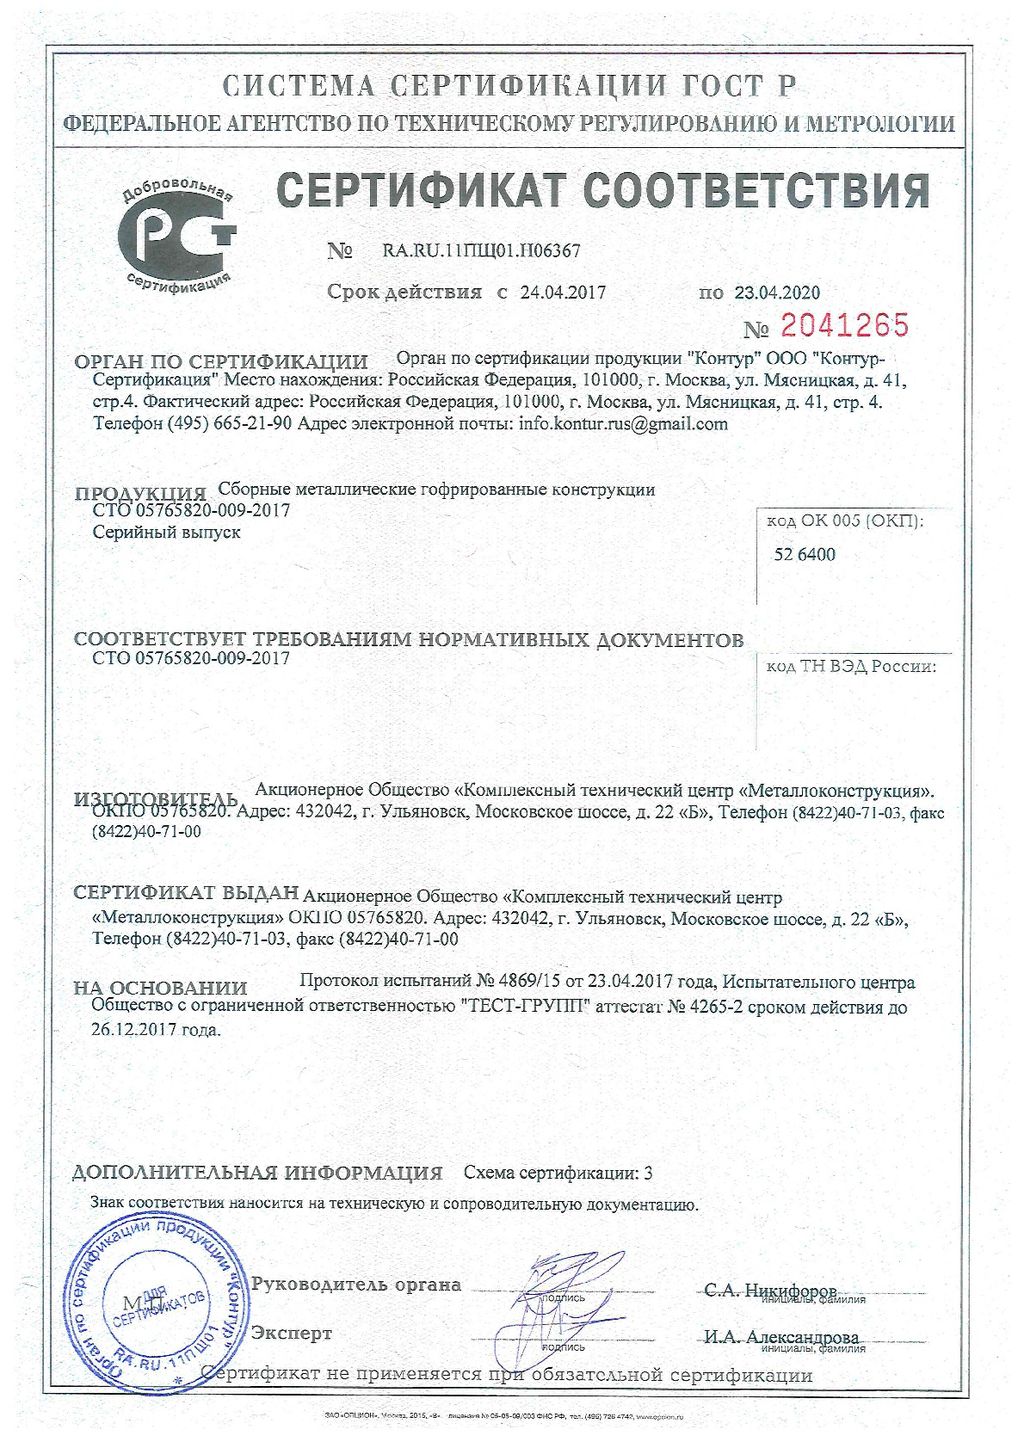 Сертификат соответствия № 2041265, КТЦ Металлоконструкция